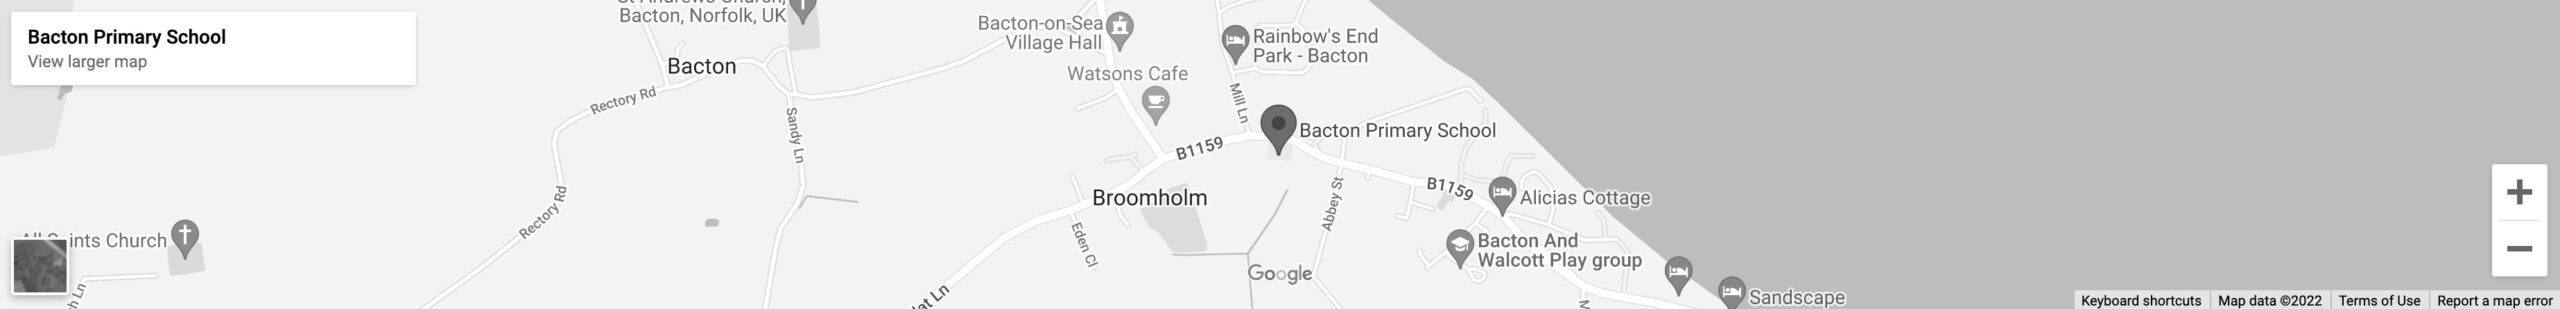 Bacton Map